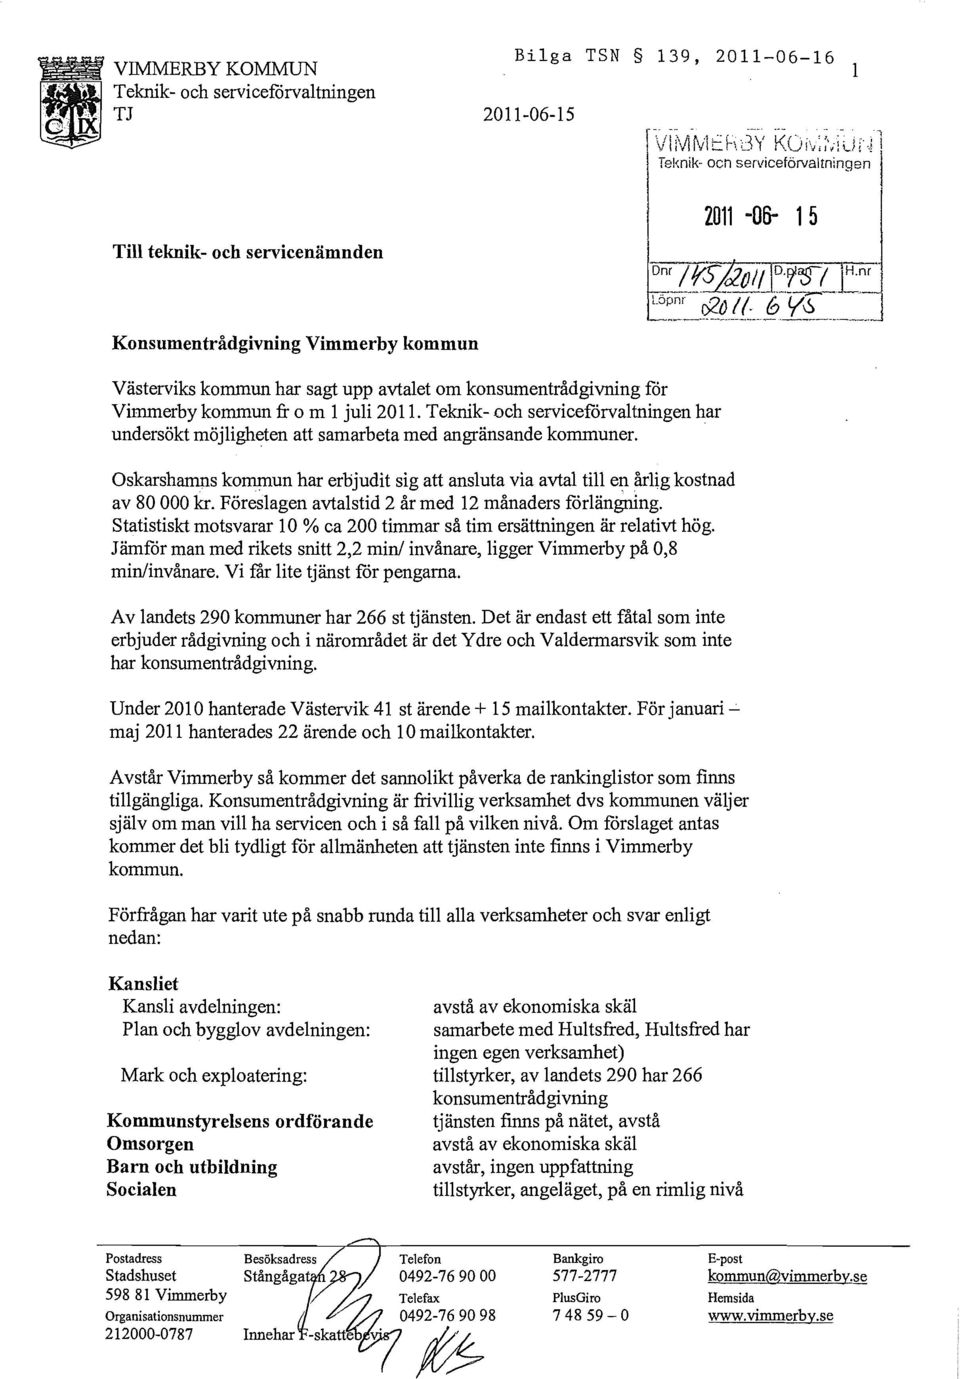 . Oskarshamns kommun har erbjudit sig att ansluta via avtal till en årlig kostnad av 80 000 kr. Föreslagen avtalstid 2 år med 12 månaders forlängning.